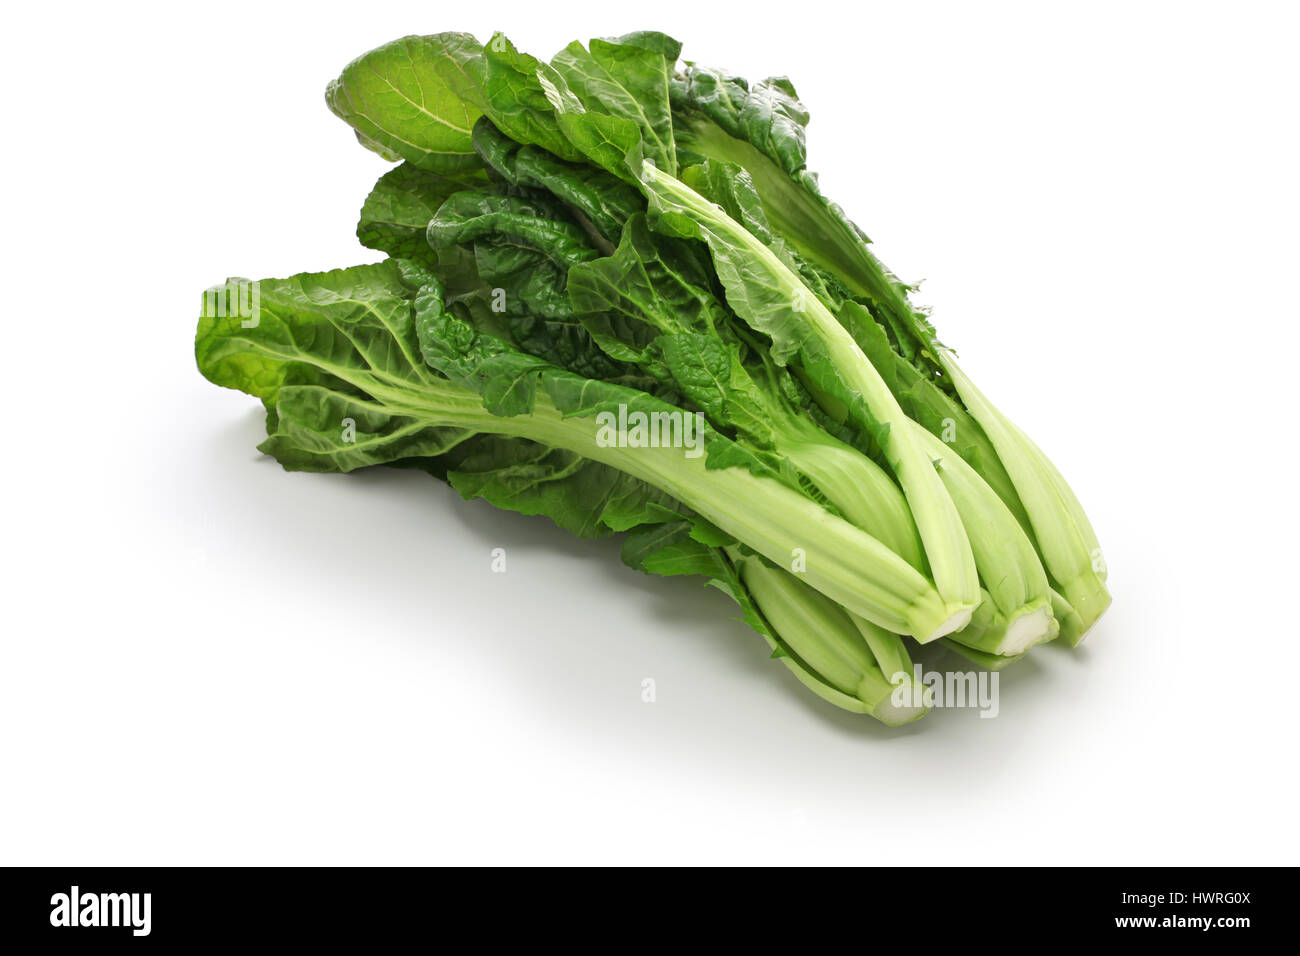 takana, brassica juncea var integrifolia, japanese leaf vegetable Stock Photo